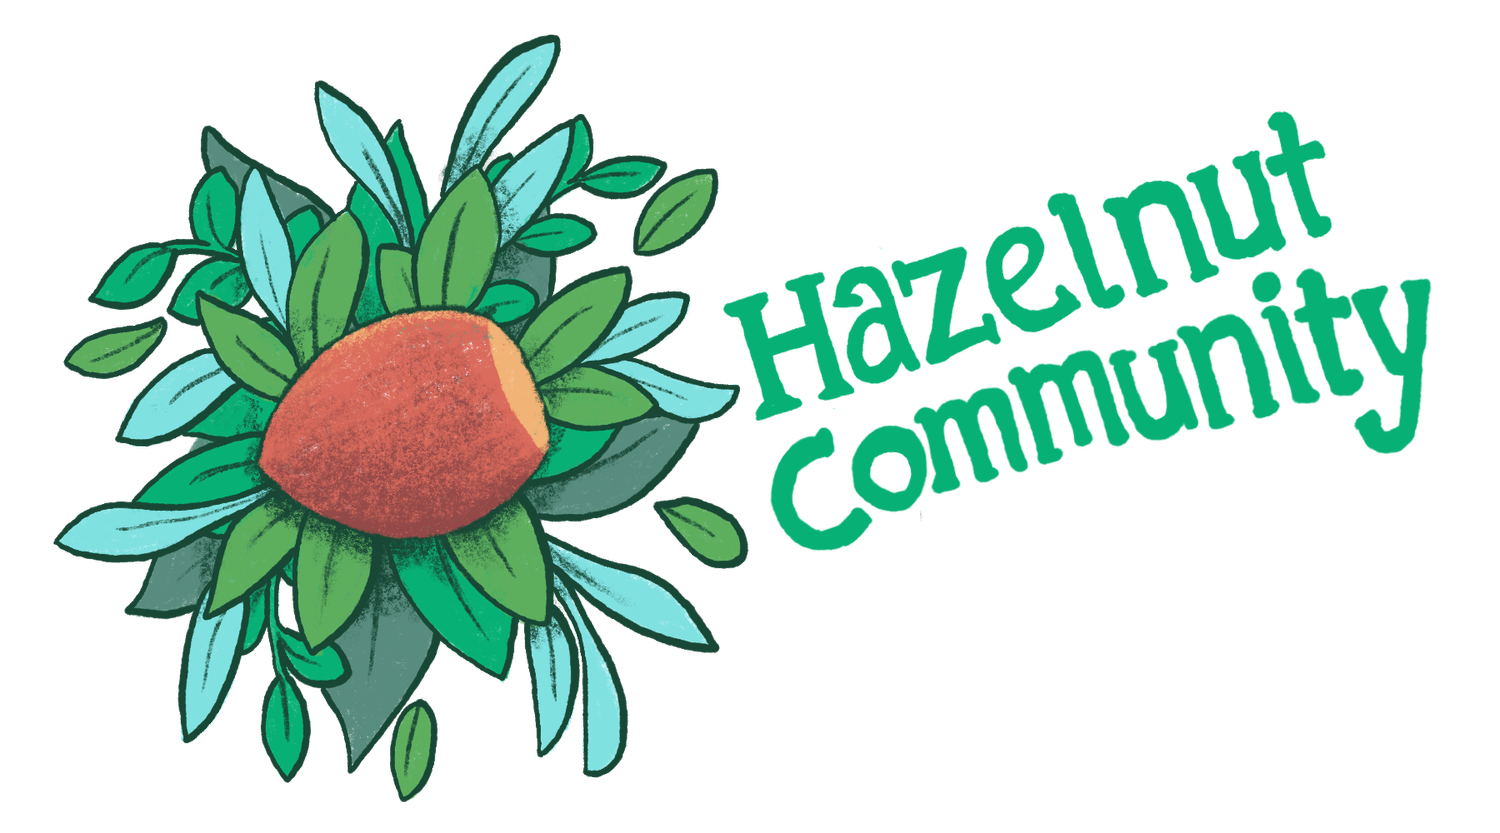 Hazelnut Community